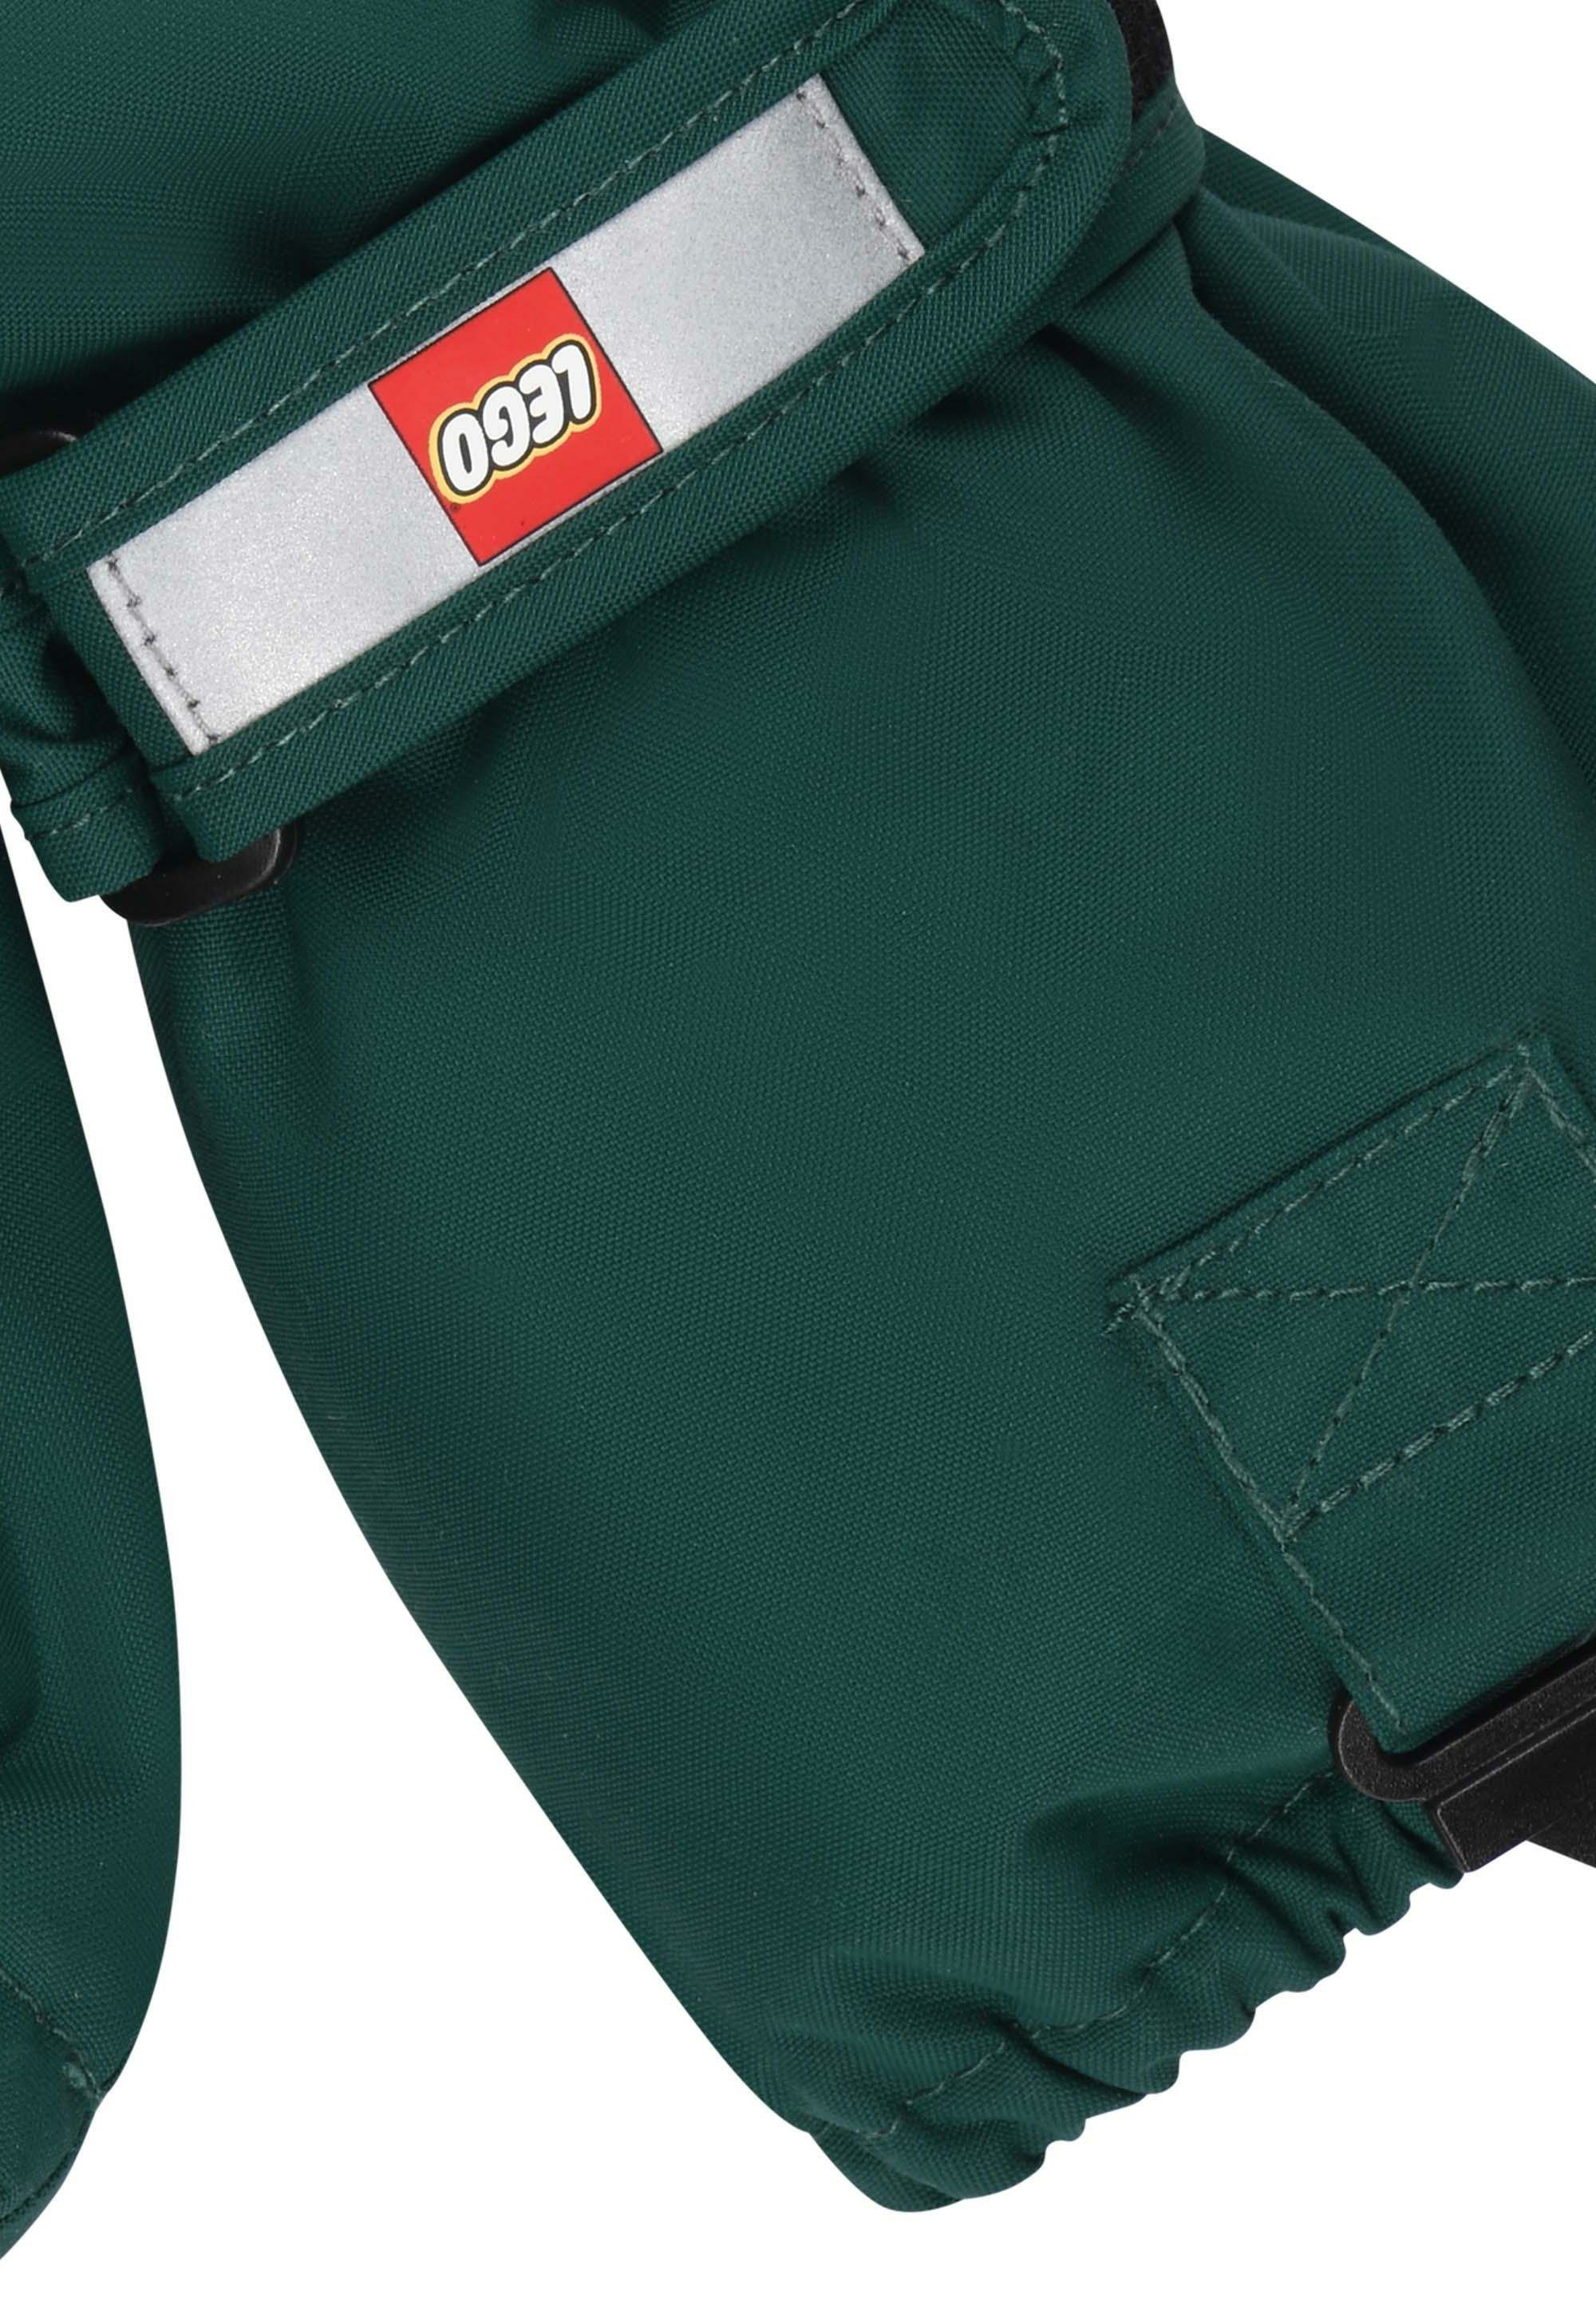 LWATLIN LEGO® green und Wear Multisporthandschuhe Wasserdicht, dark 700 Warm Skihandschuhe